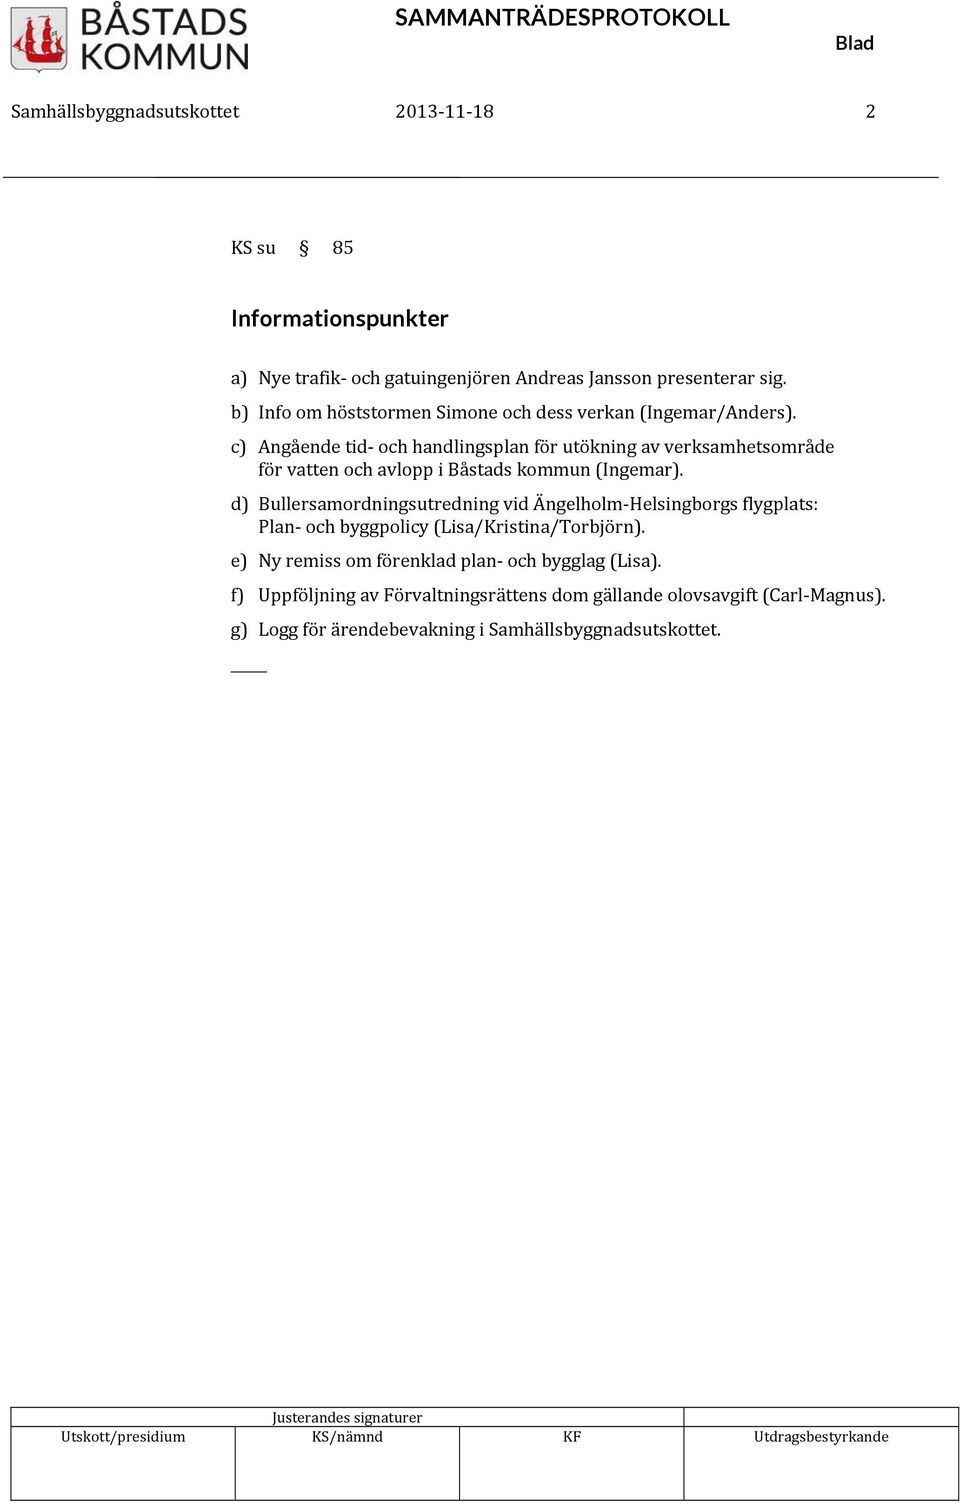 c) Angående tid och handlingsplan för utökning av verksamhetsområde för vatten och avlopp i Båstads kommun (Ingemar).